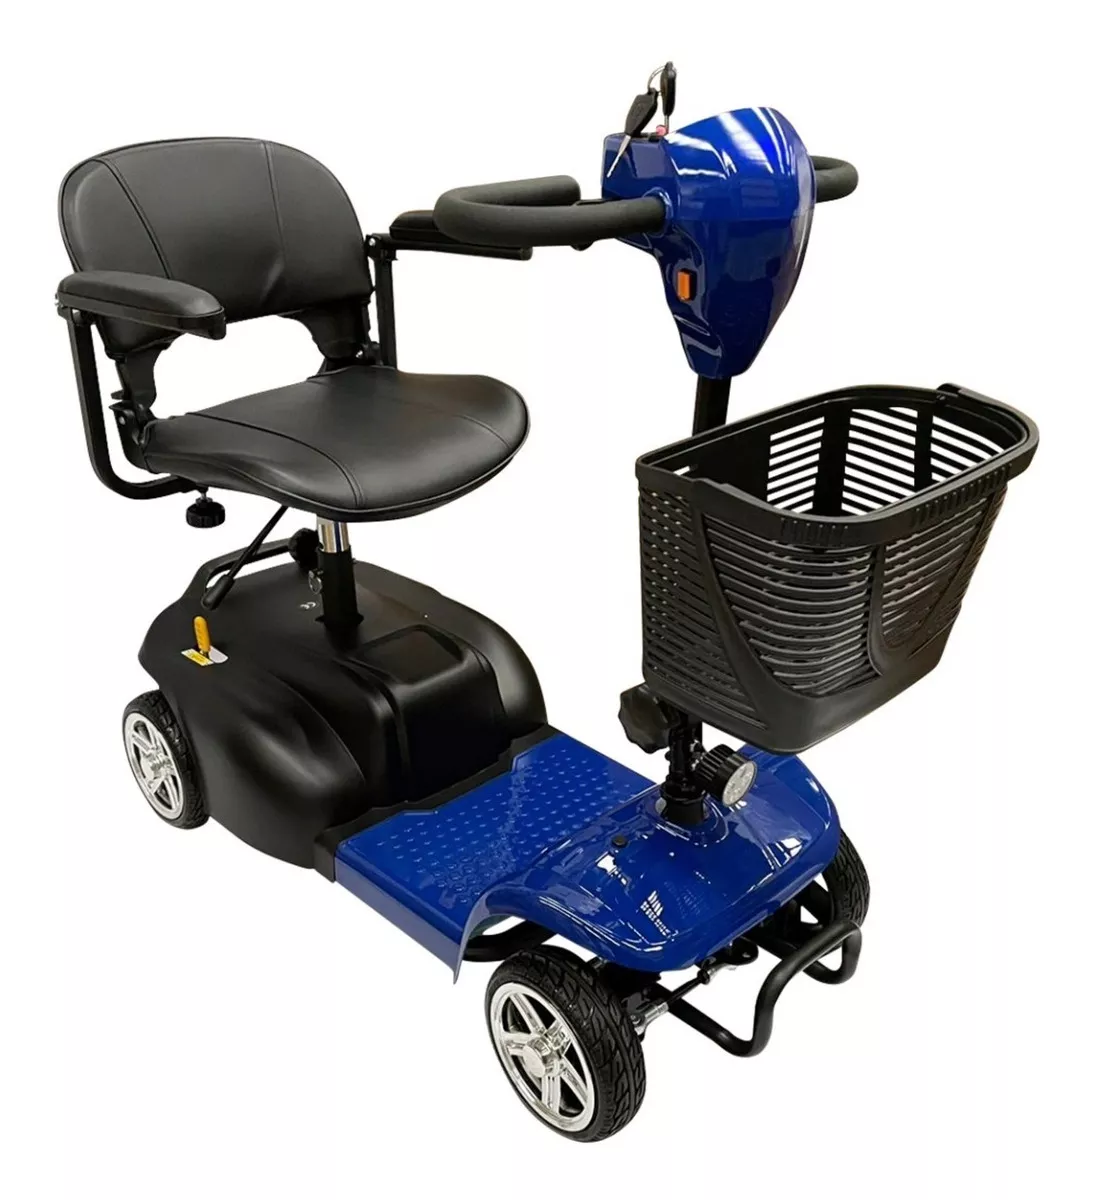 Segunda imagen para búsqueda de silla de ruedas electrica precio